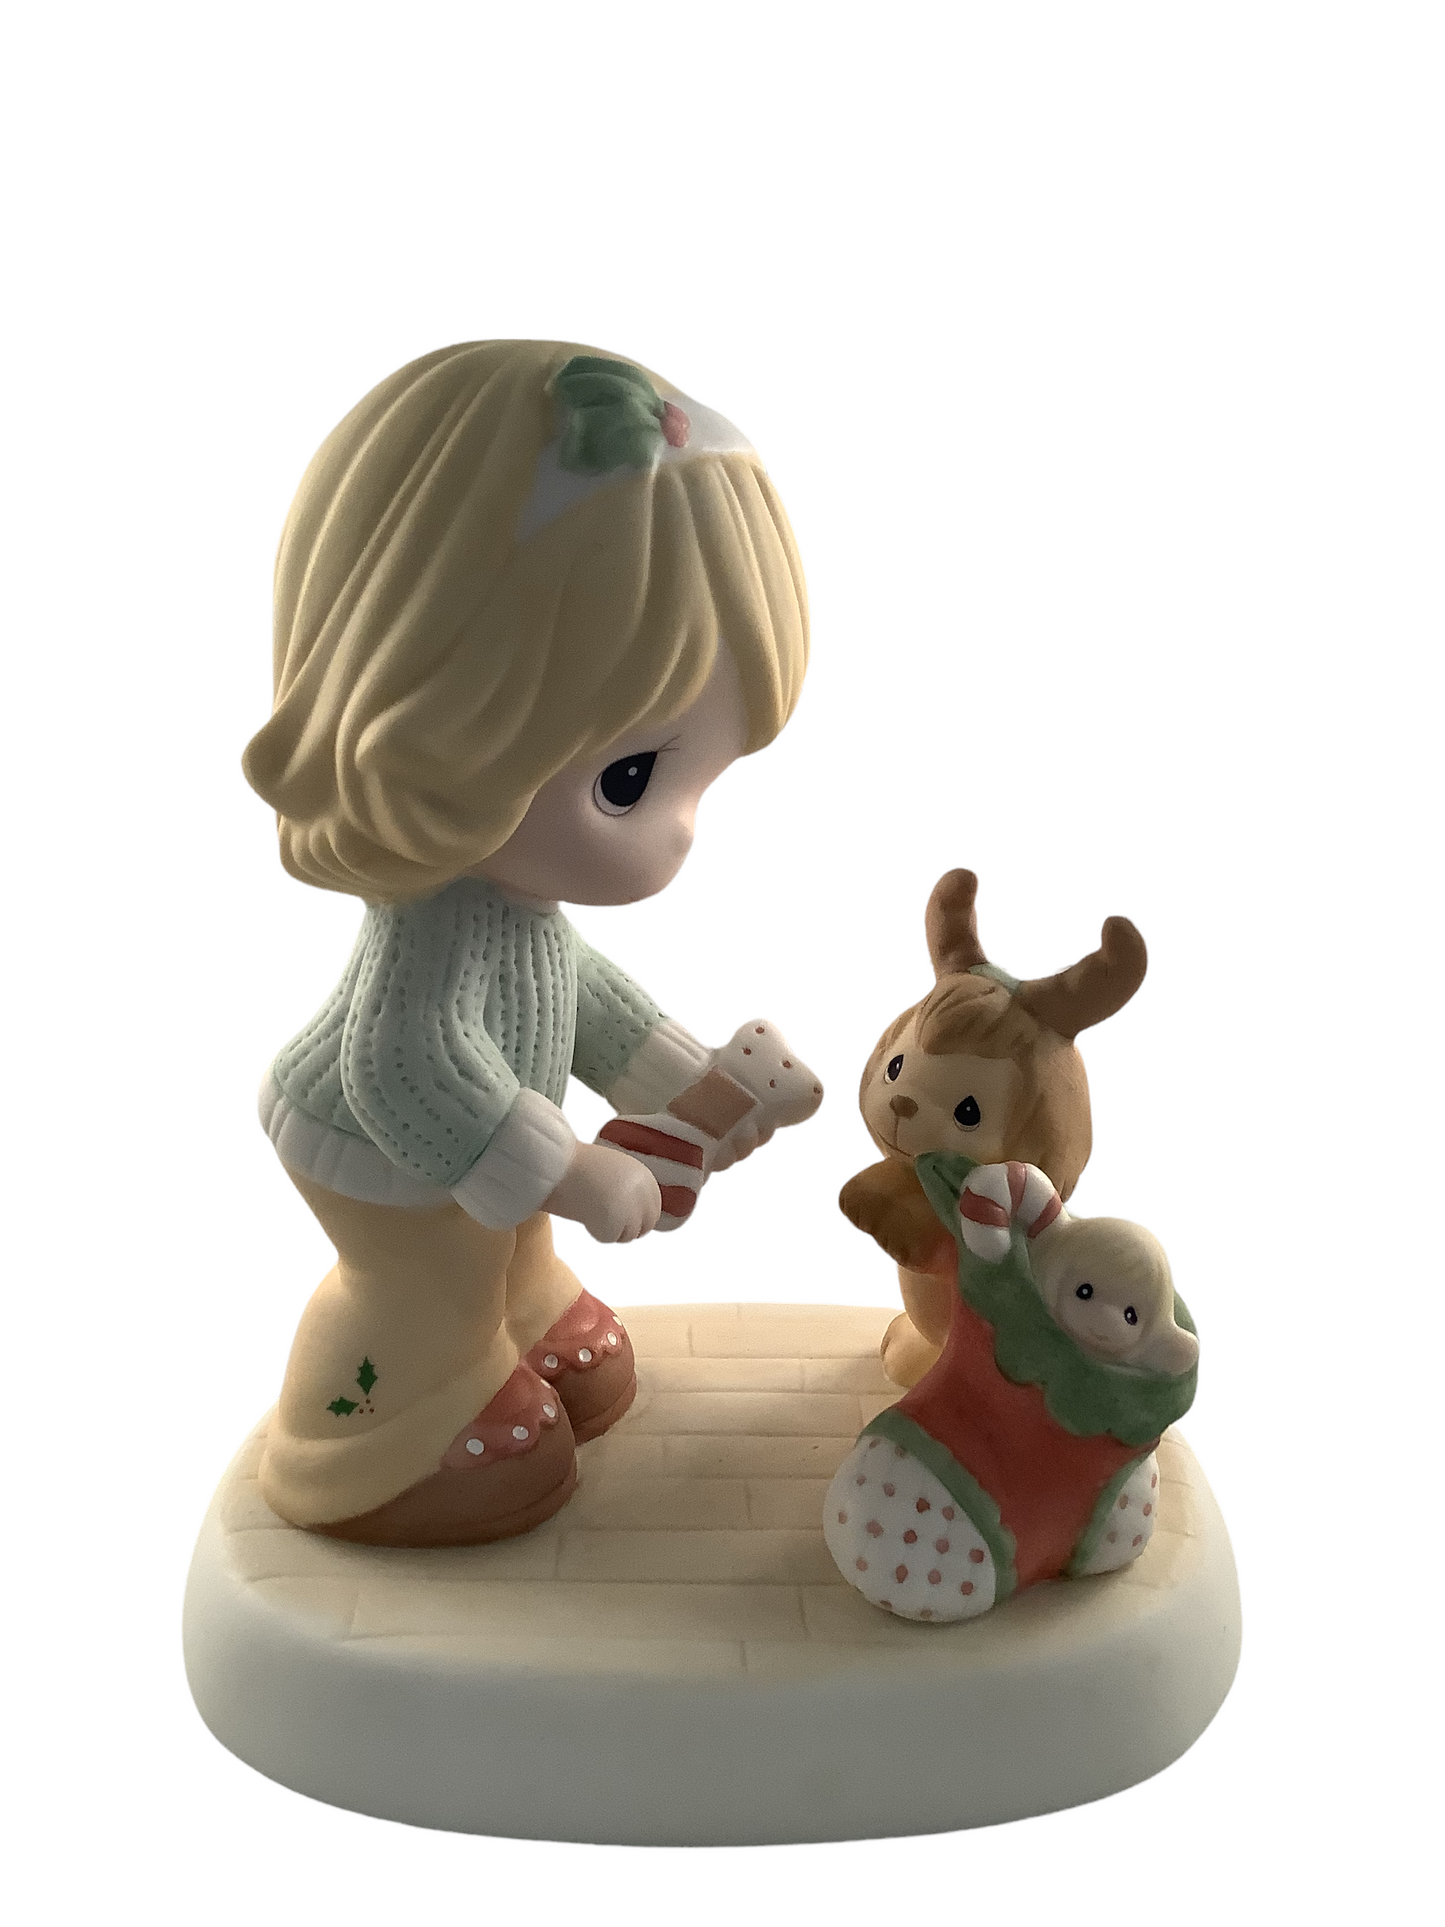 Take Delight In Christmas - Precious Moment Figurine